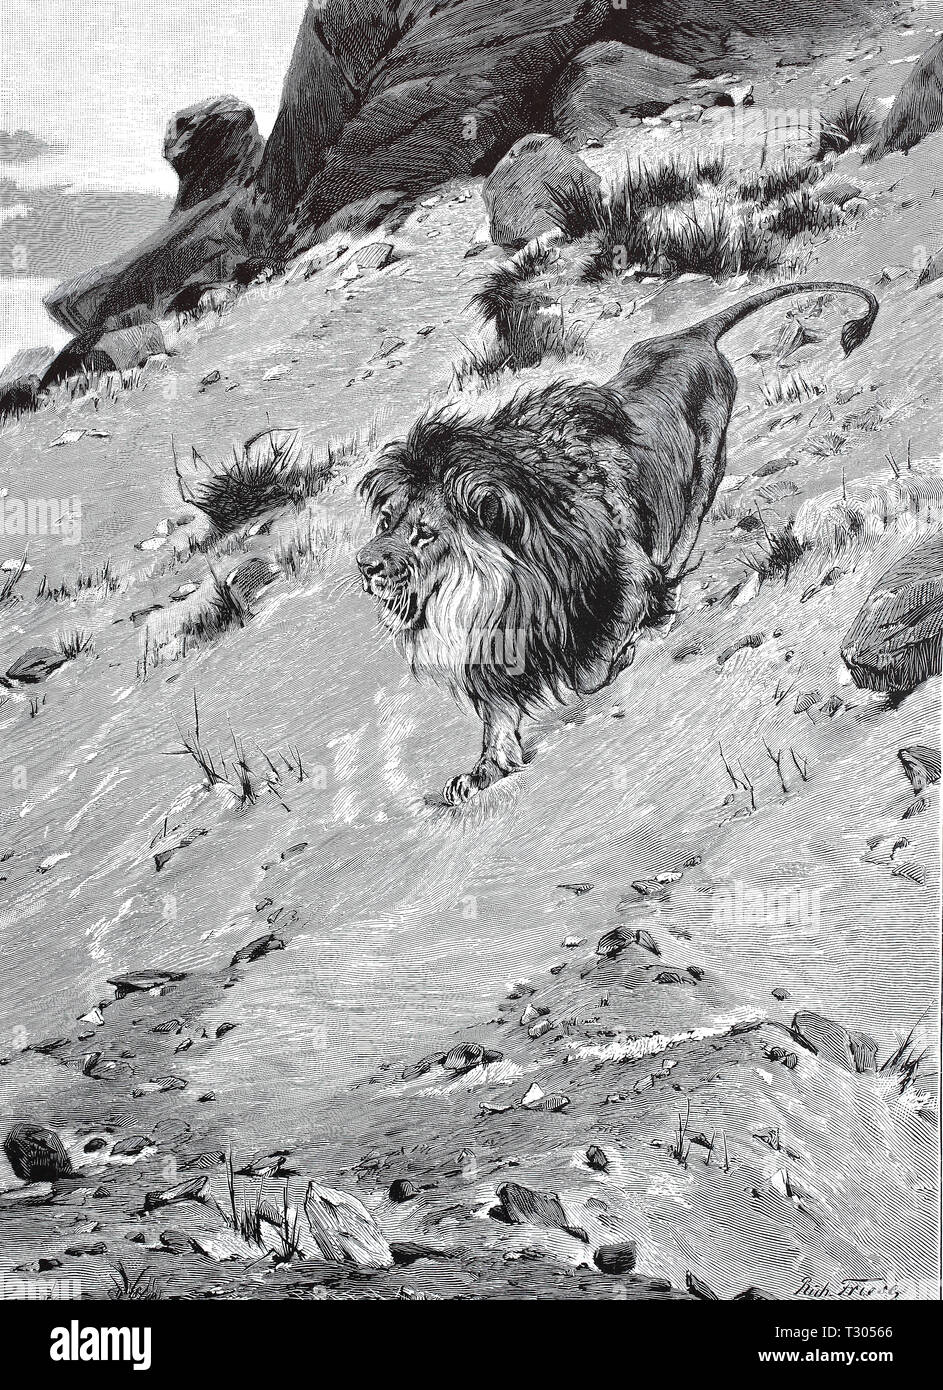 Digital improved reproduction, single male lion in a mountainous African scenery, einzelner männlicher Löwe in einer gebirgigen afrikanischen Landschaft, from an original print from the 19th century Stock Photo